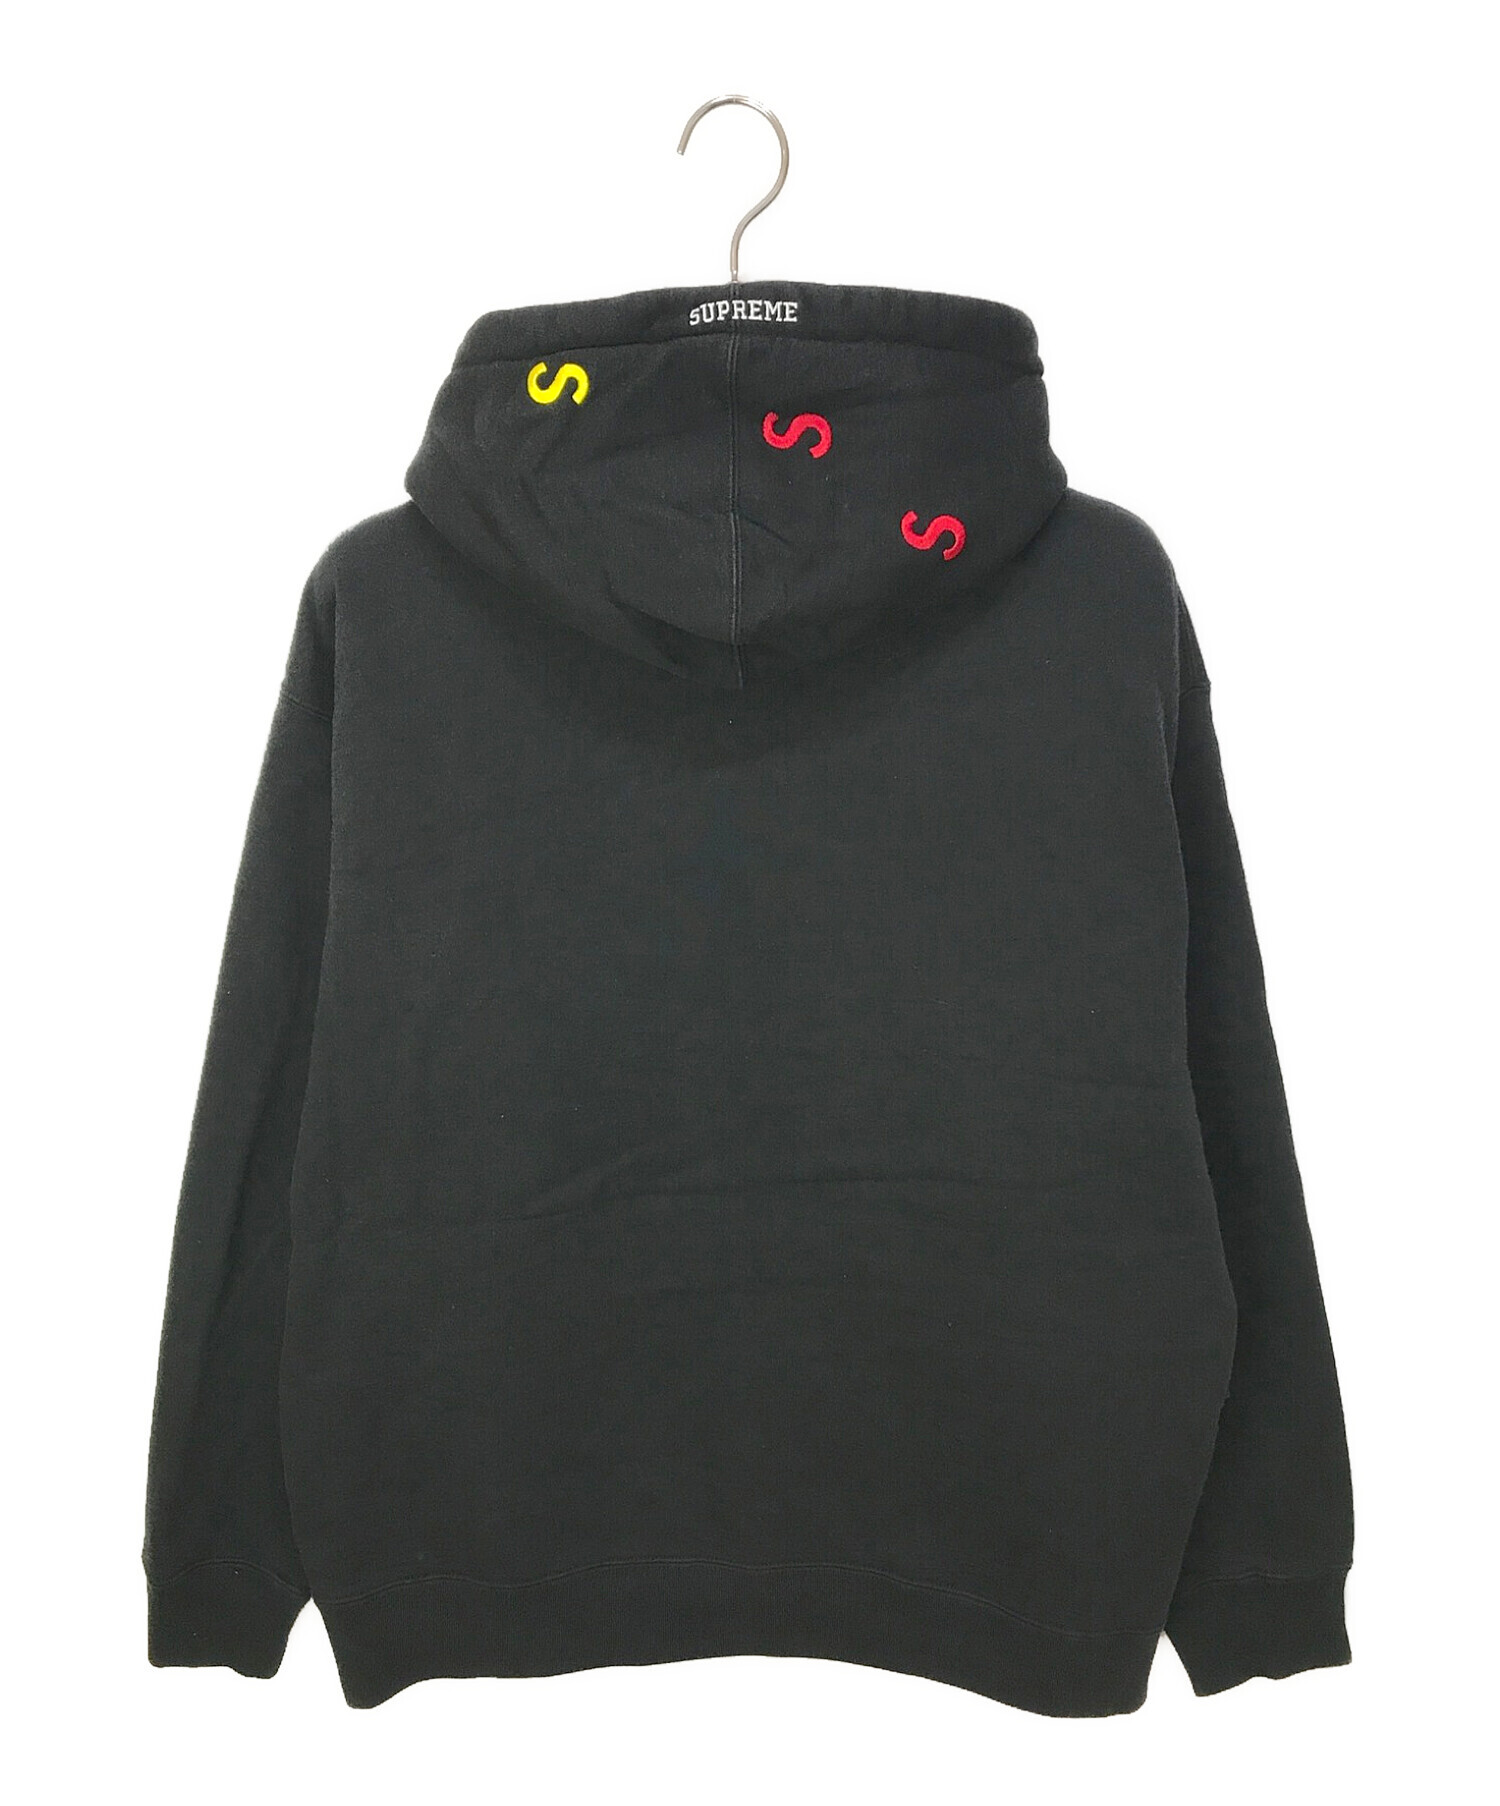 SUPREME (シュプリーム) Embroidered S Logo Hooded Sweatshirt ブラック サイズ:L